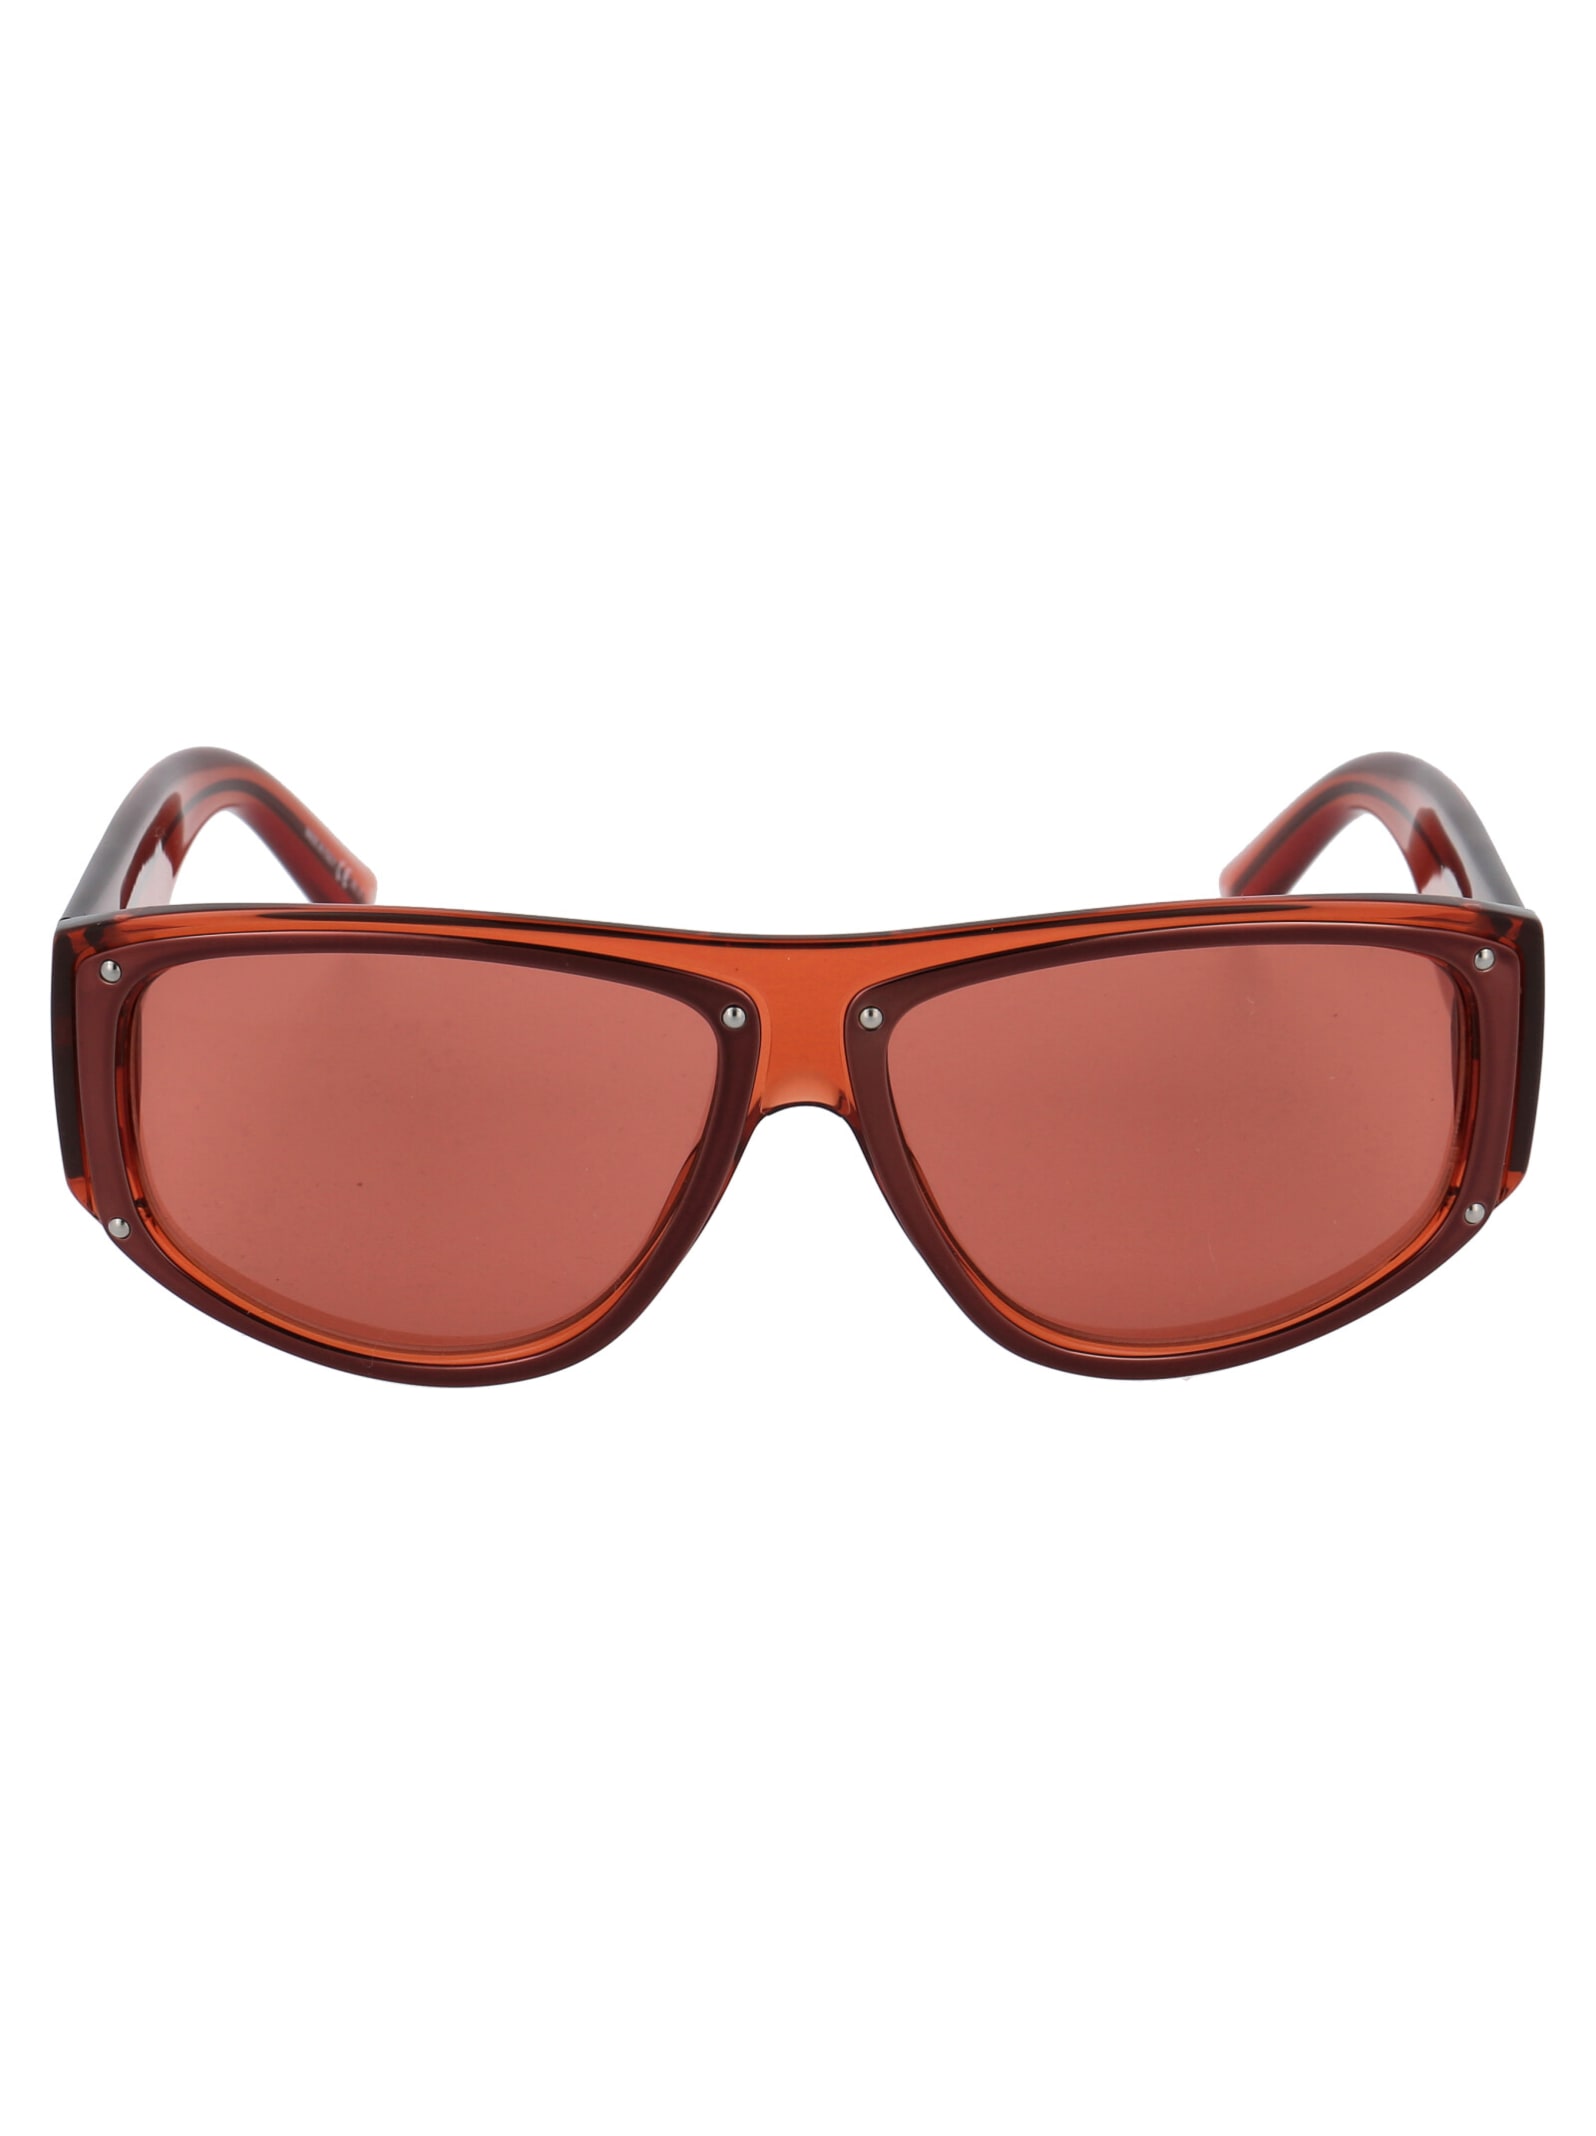 Givenchy Eyewear Gv 7177/s Sunglasses